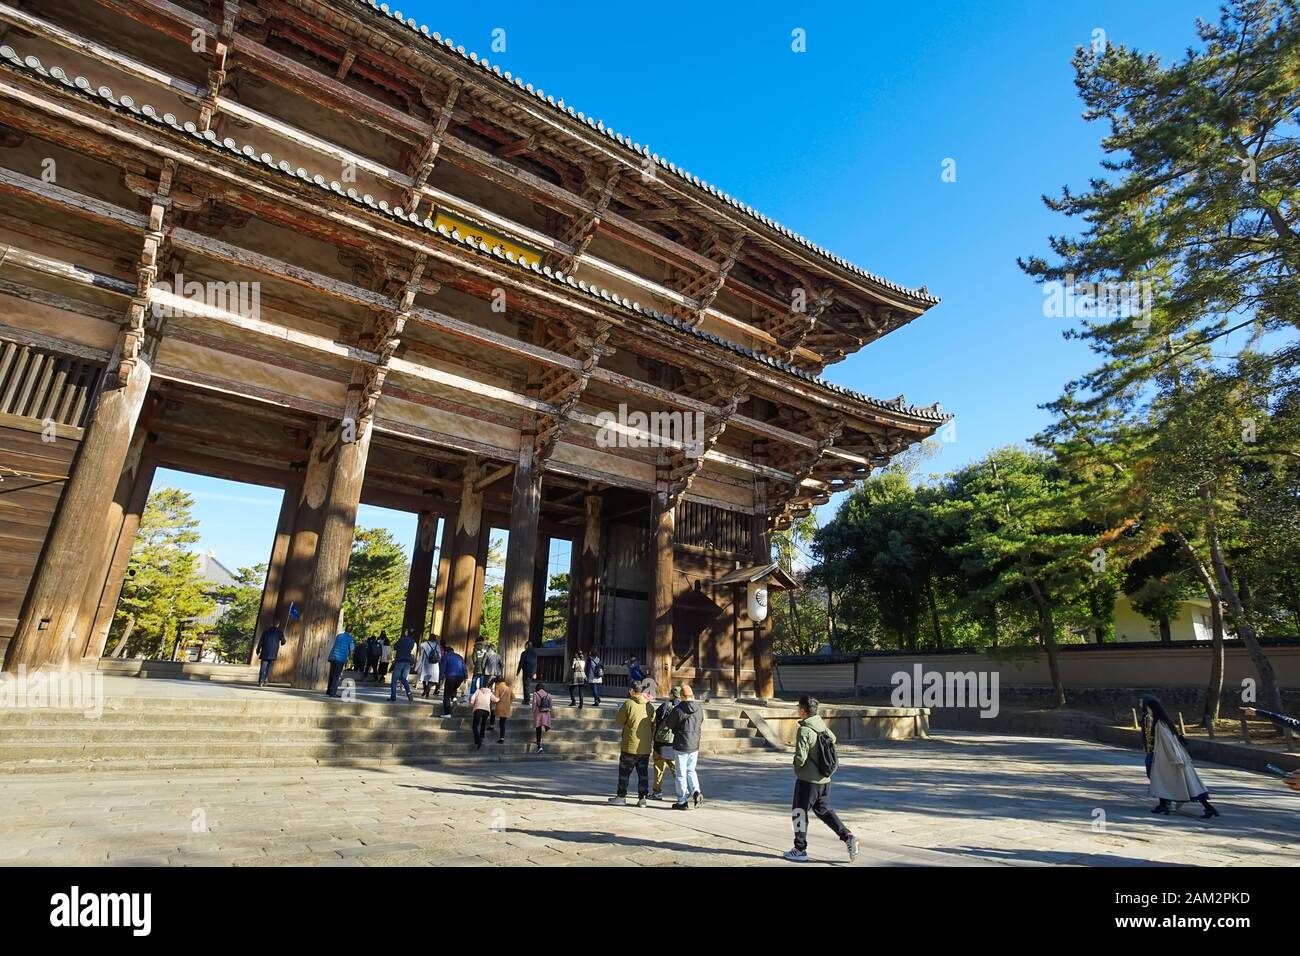 Nara, Giappone - 16 dicembre 2019 : la grande porta di legno del Tempio Todaiji, questa è la più famosa destinazione di viaggio della città di Nara nella zona di Kansai Foto Stock